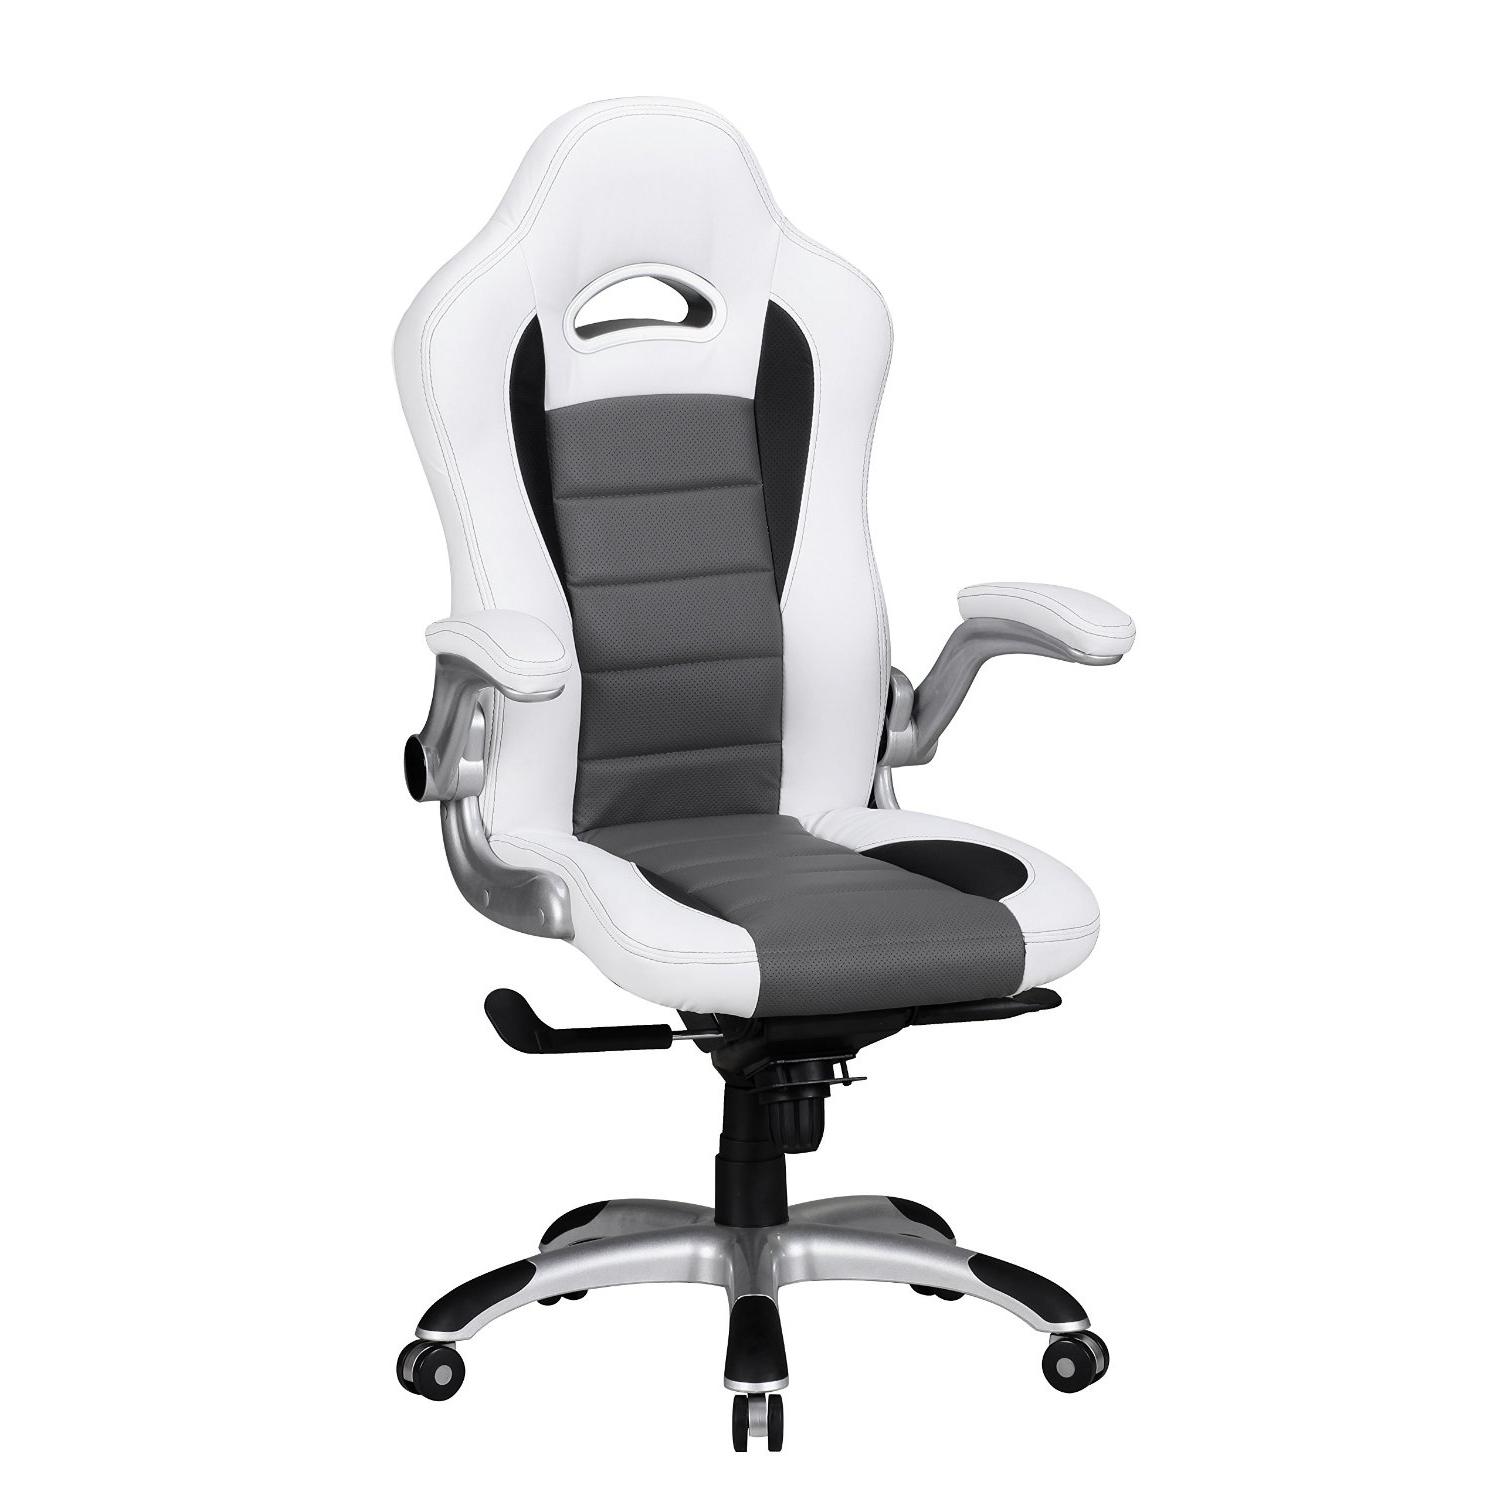 Chaise de bureau NORIS, Design Gamer, Utilisation 8h, en Cuir, Blanc